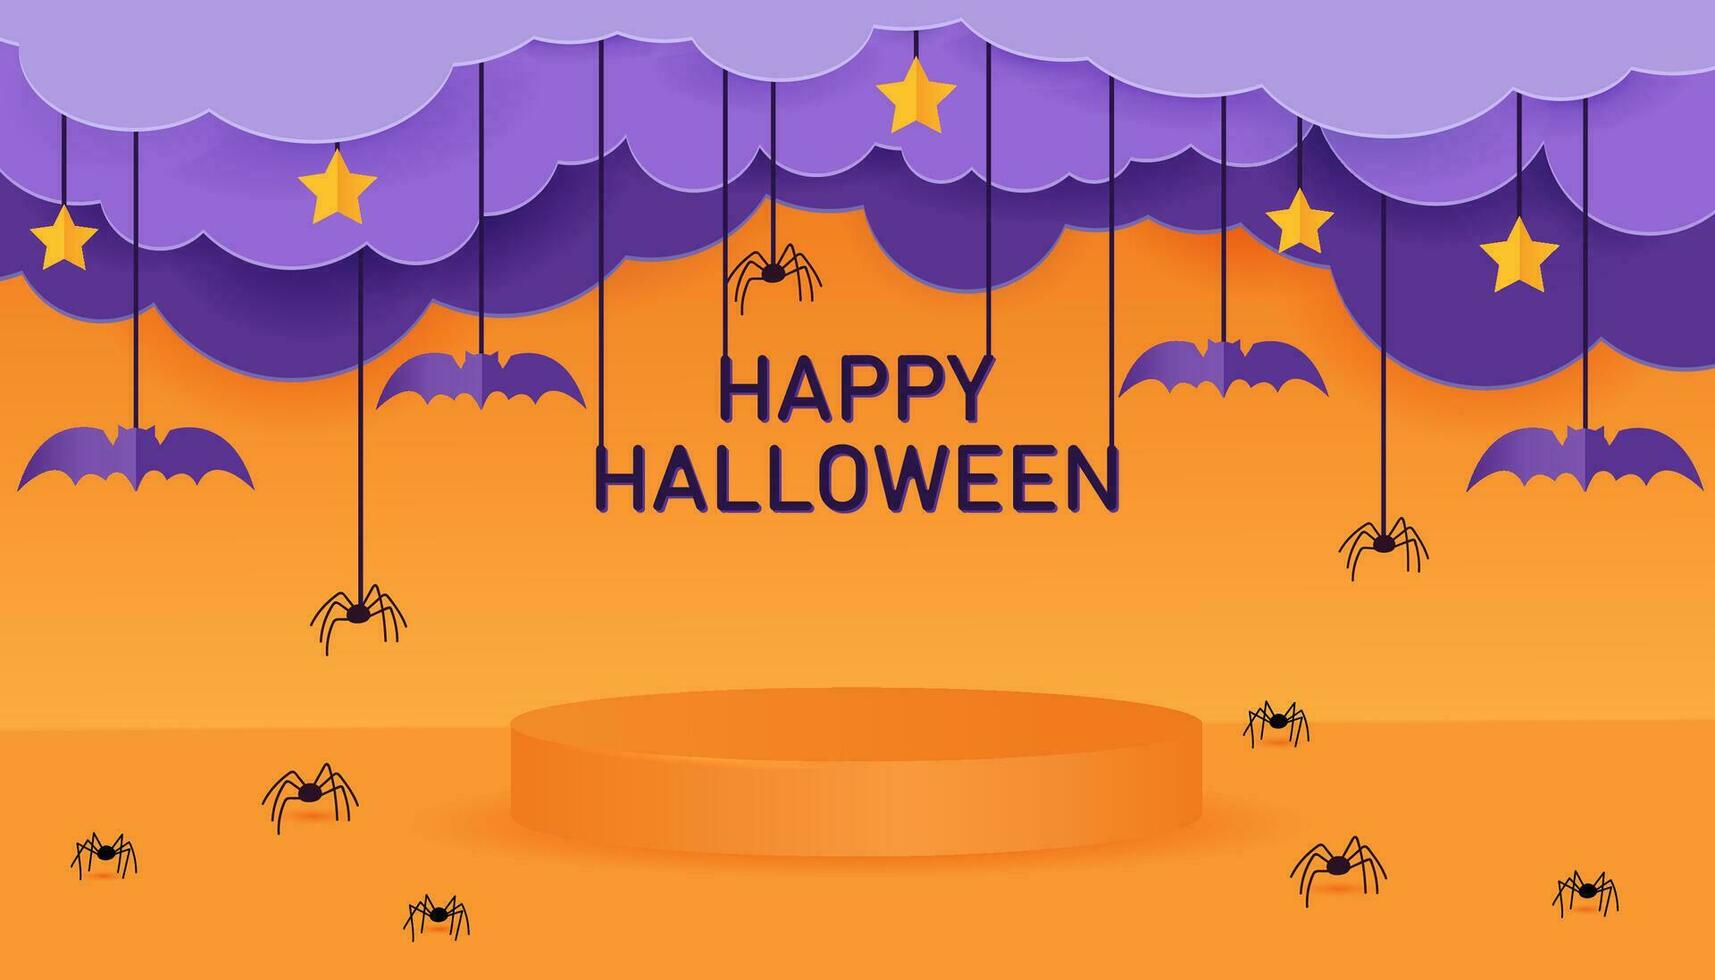 gelukkig halloween banier of partij uitnodiging achtergrond met wolken, vleermuizen en spinnen in papier besnoeiing stijl. oranje 3d podium voor halloween. vector illustratie.